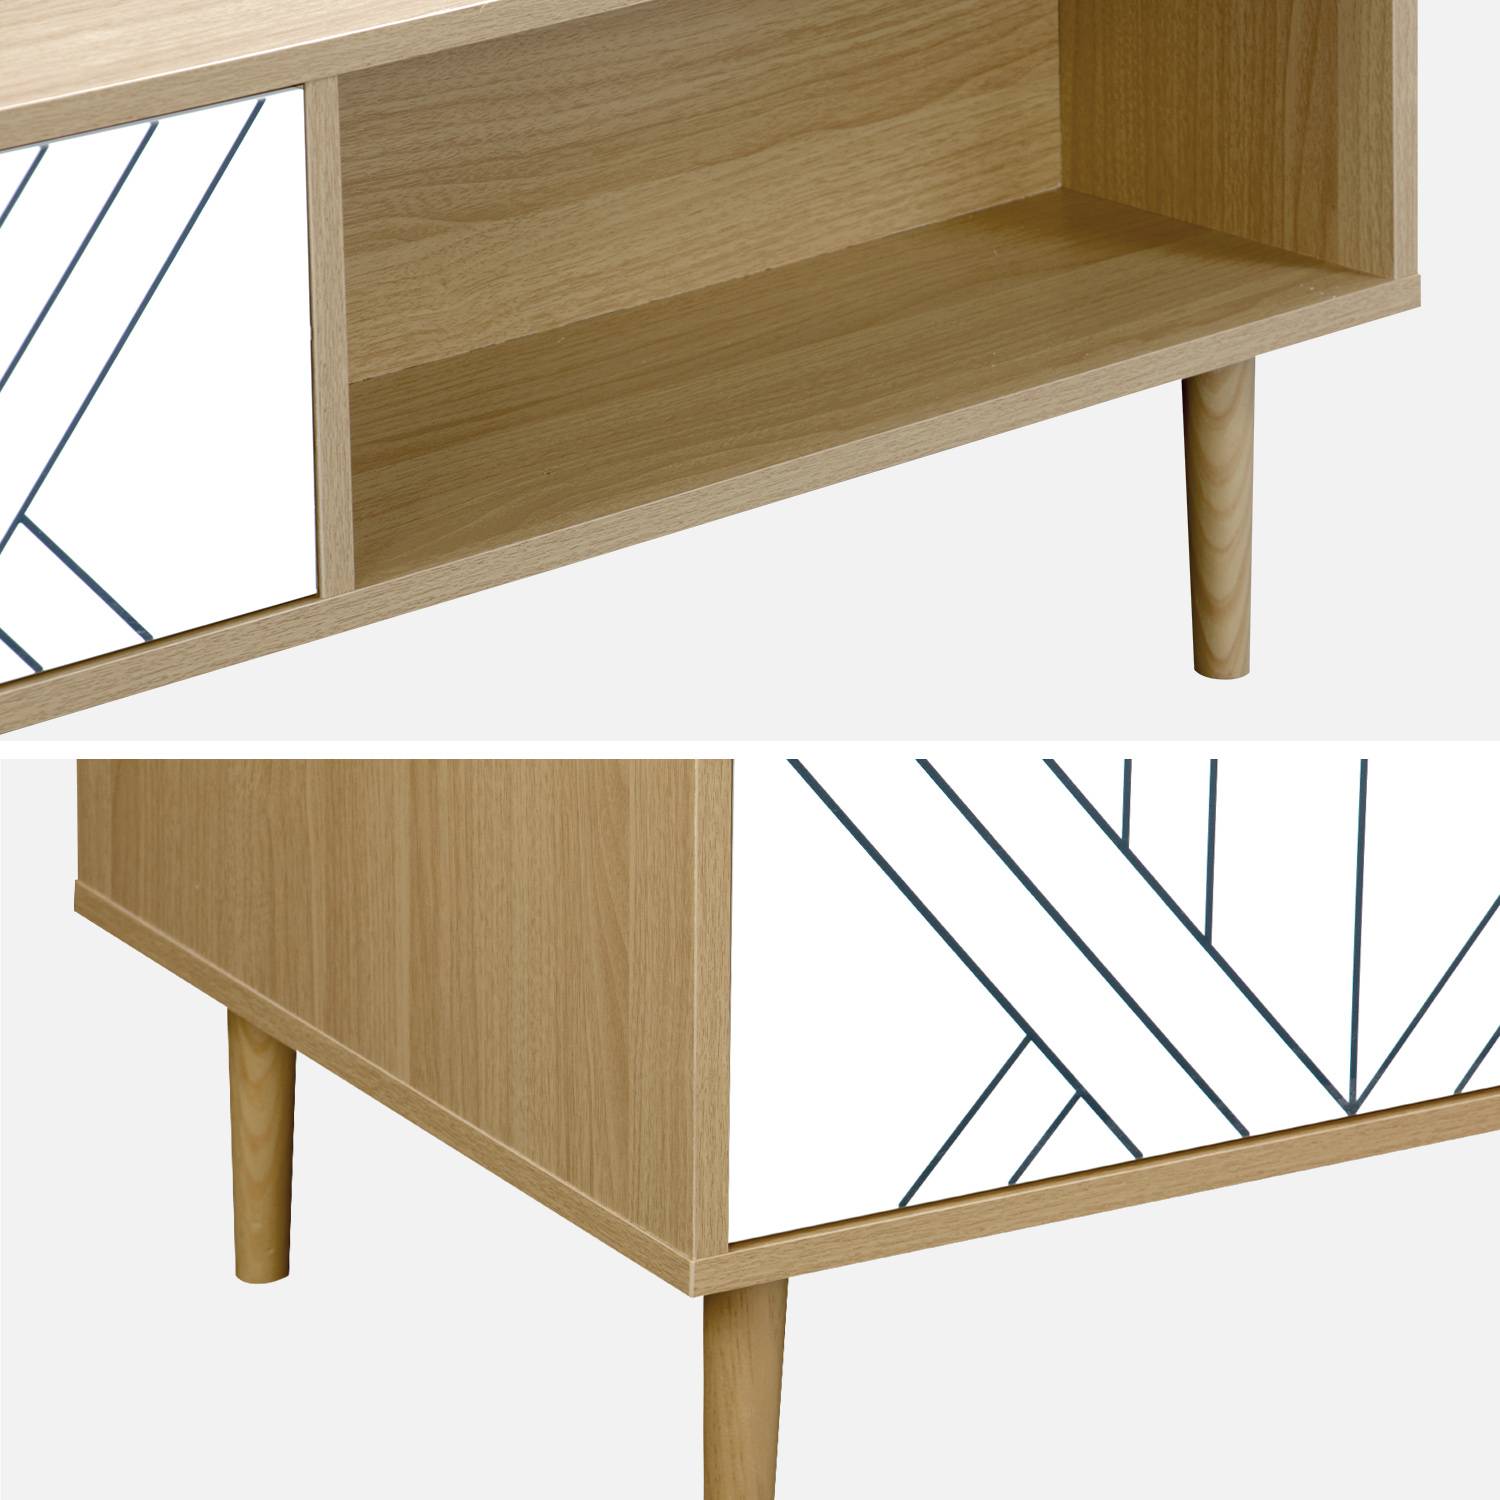 Table basse en décor bois et blanc - Mika - 2 tiroirs, 2 espaces de rangement, L 120 x l 55 x H 40cm Photo6